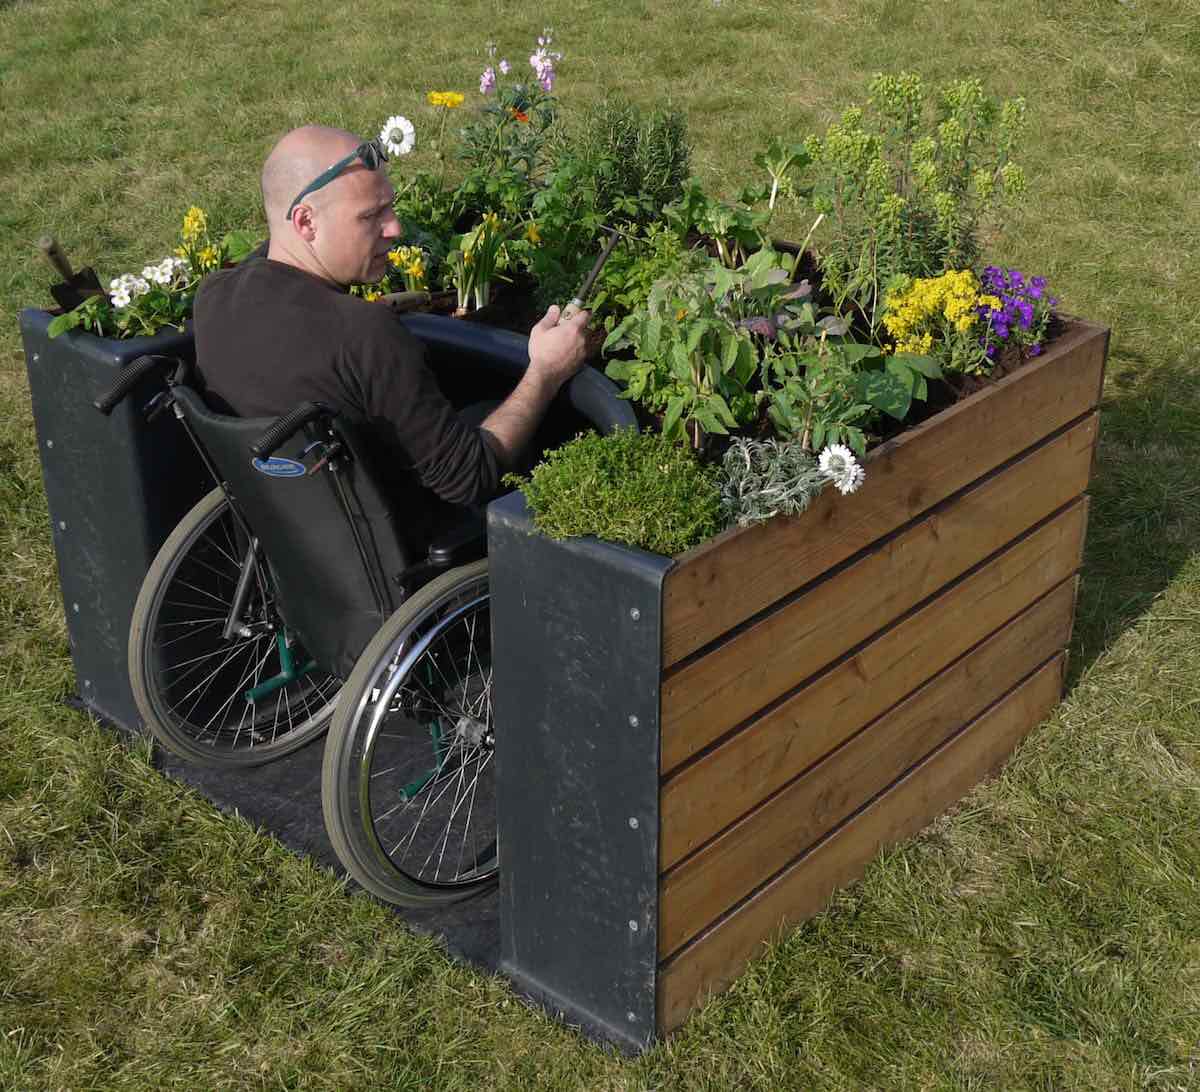 Cama elevada para hacer accesible el cultivo a personas en silla de ruedas